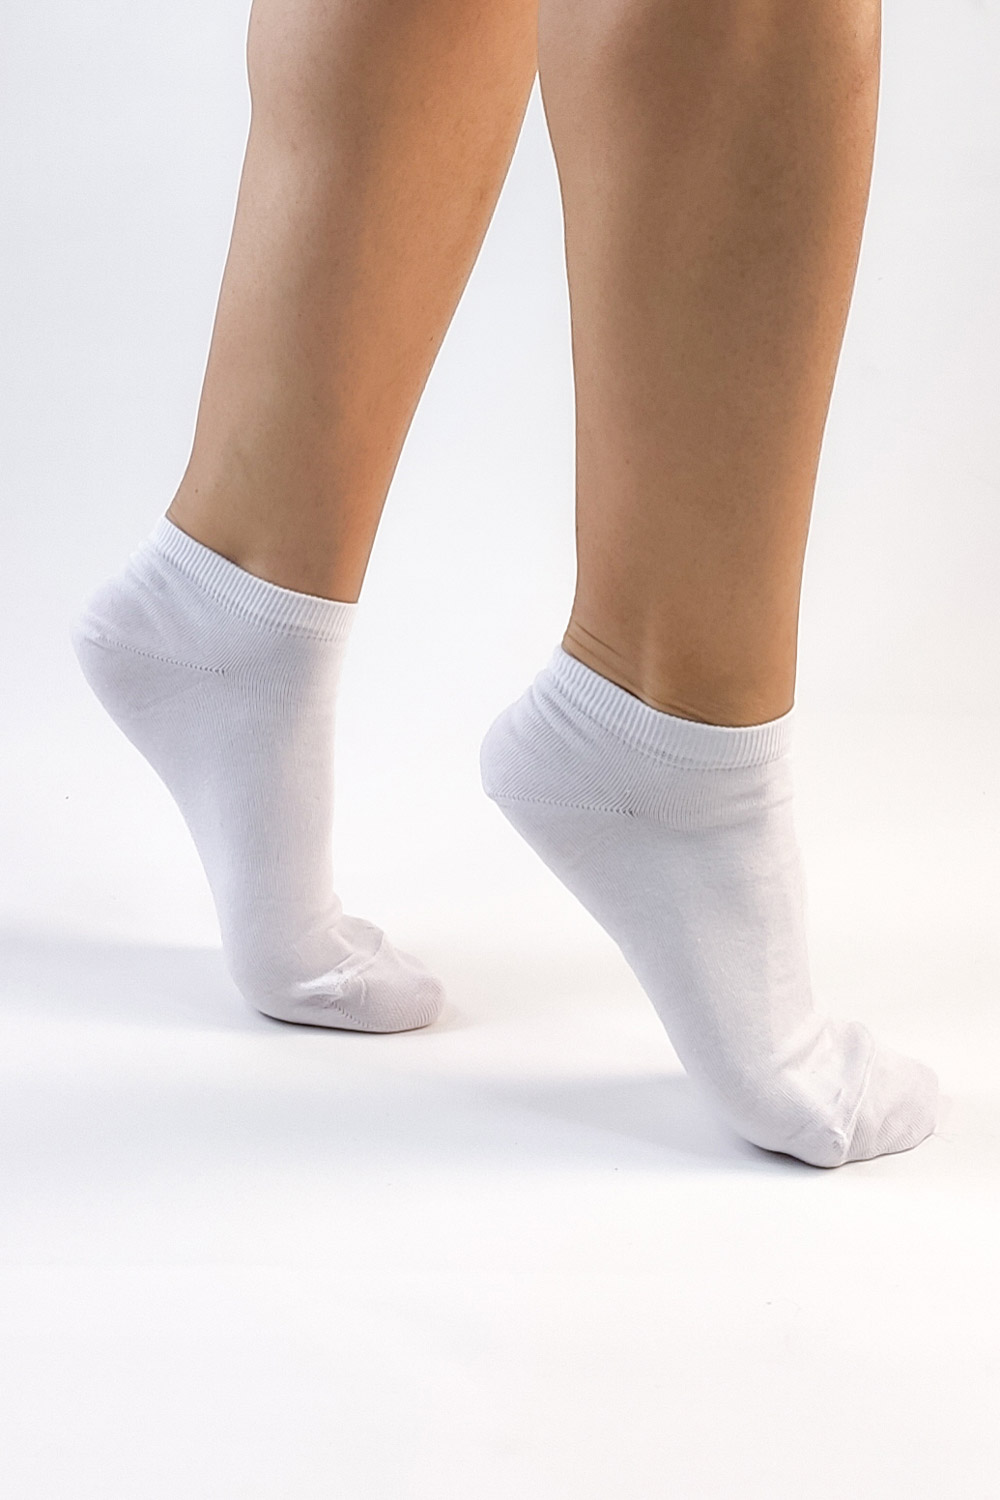 ασπρες γυναικείες κοφτες κάλτσες